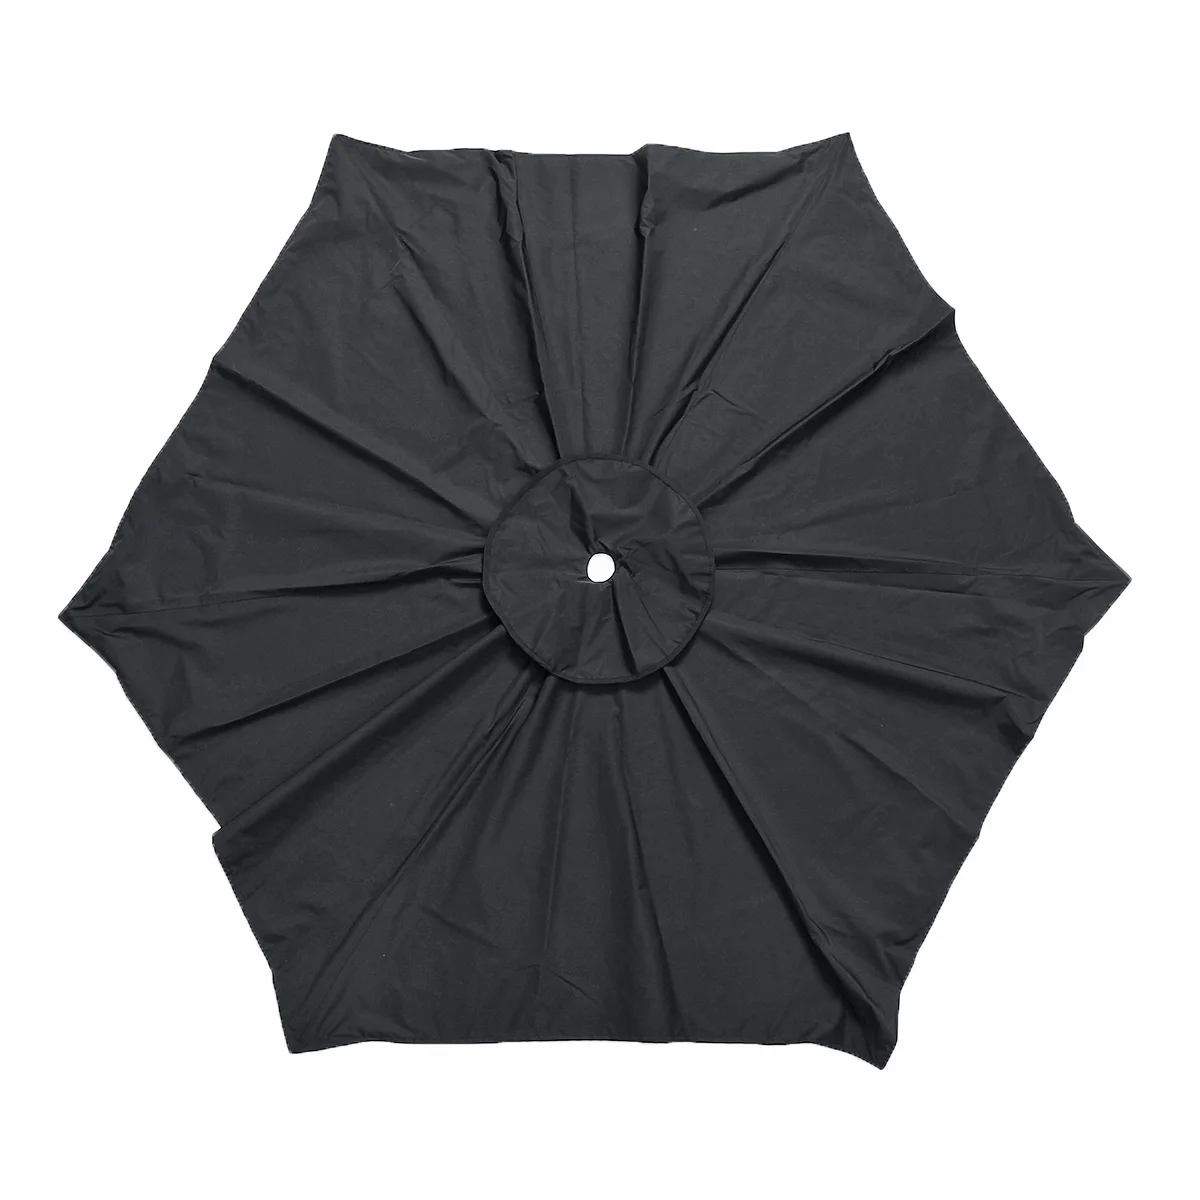 Водонепроницаемый навес зонтик 6.5фт солнцезащитный навес крышка зонтик верхний сад наружная Замена ткань садовый зонтик навес крышка - Цвет: Черный